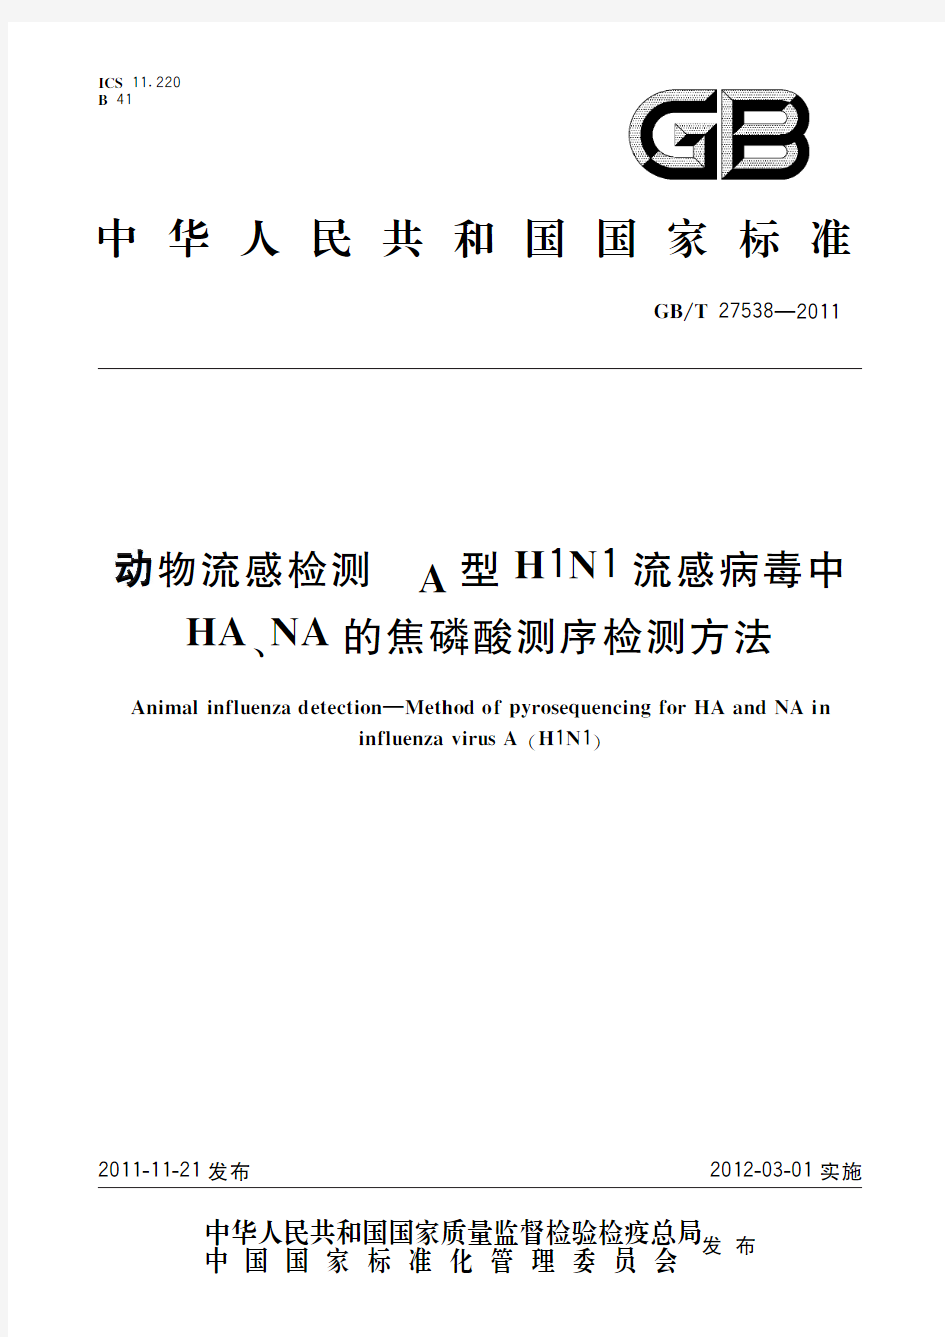 动物流感检测 A型H1N1流感病毒中HA、NA的焦磷酸测序检测方法(标准